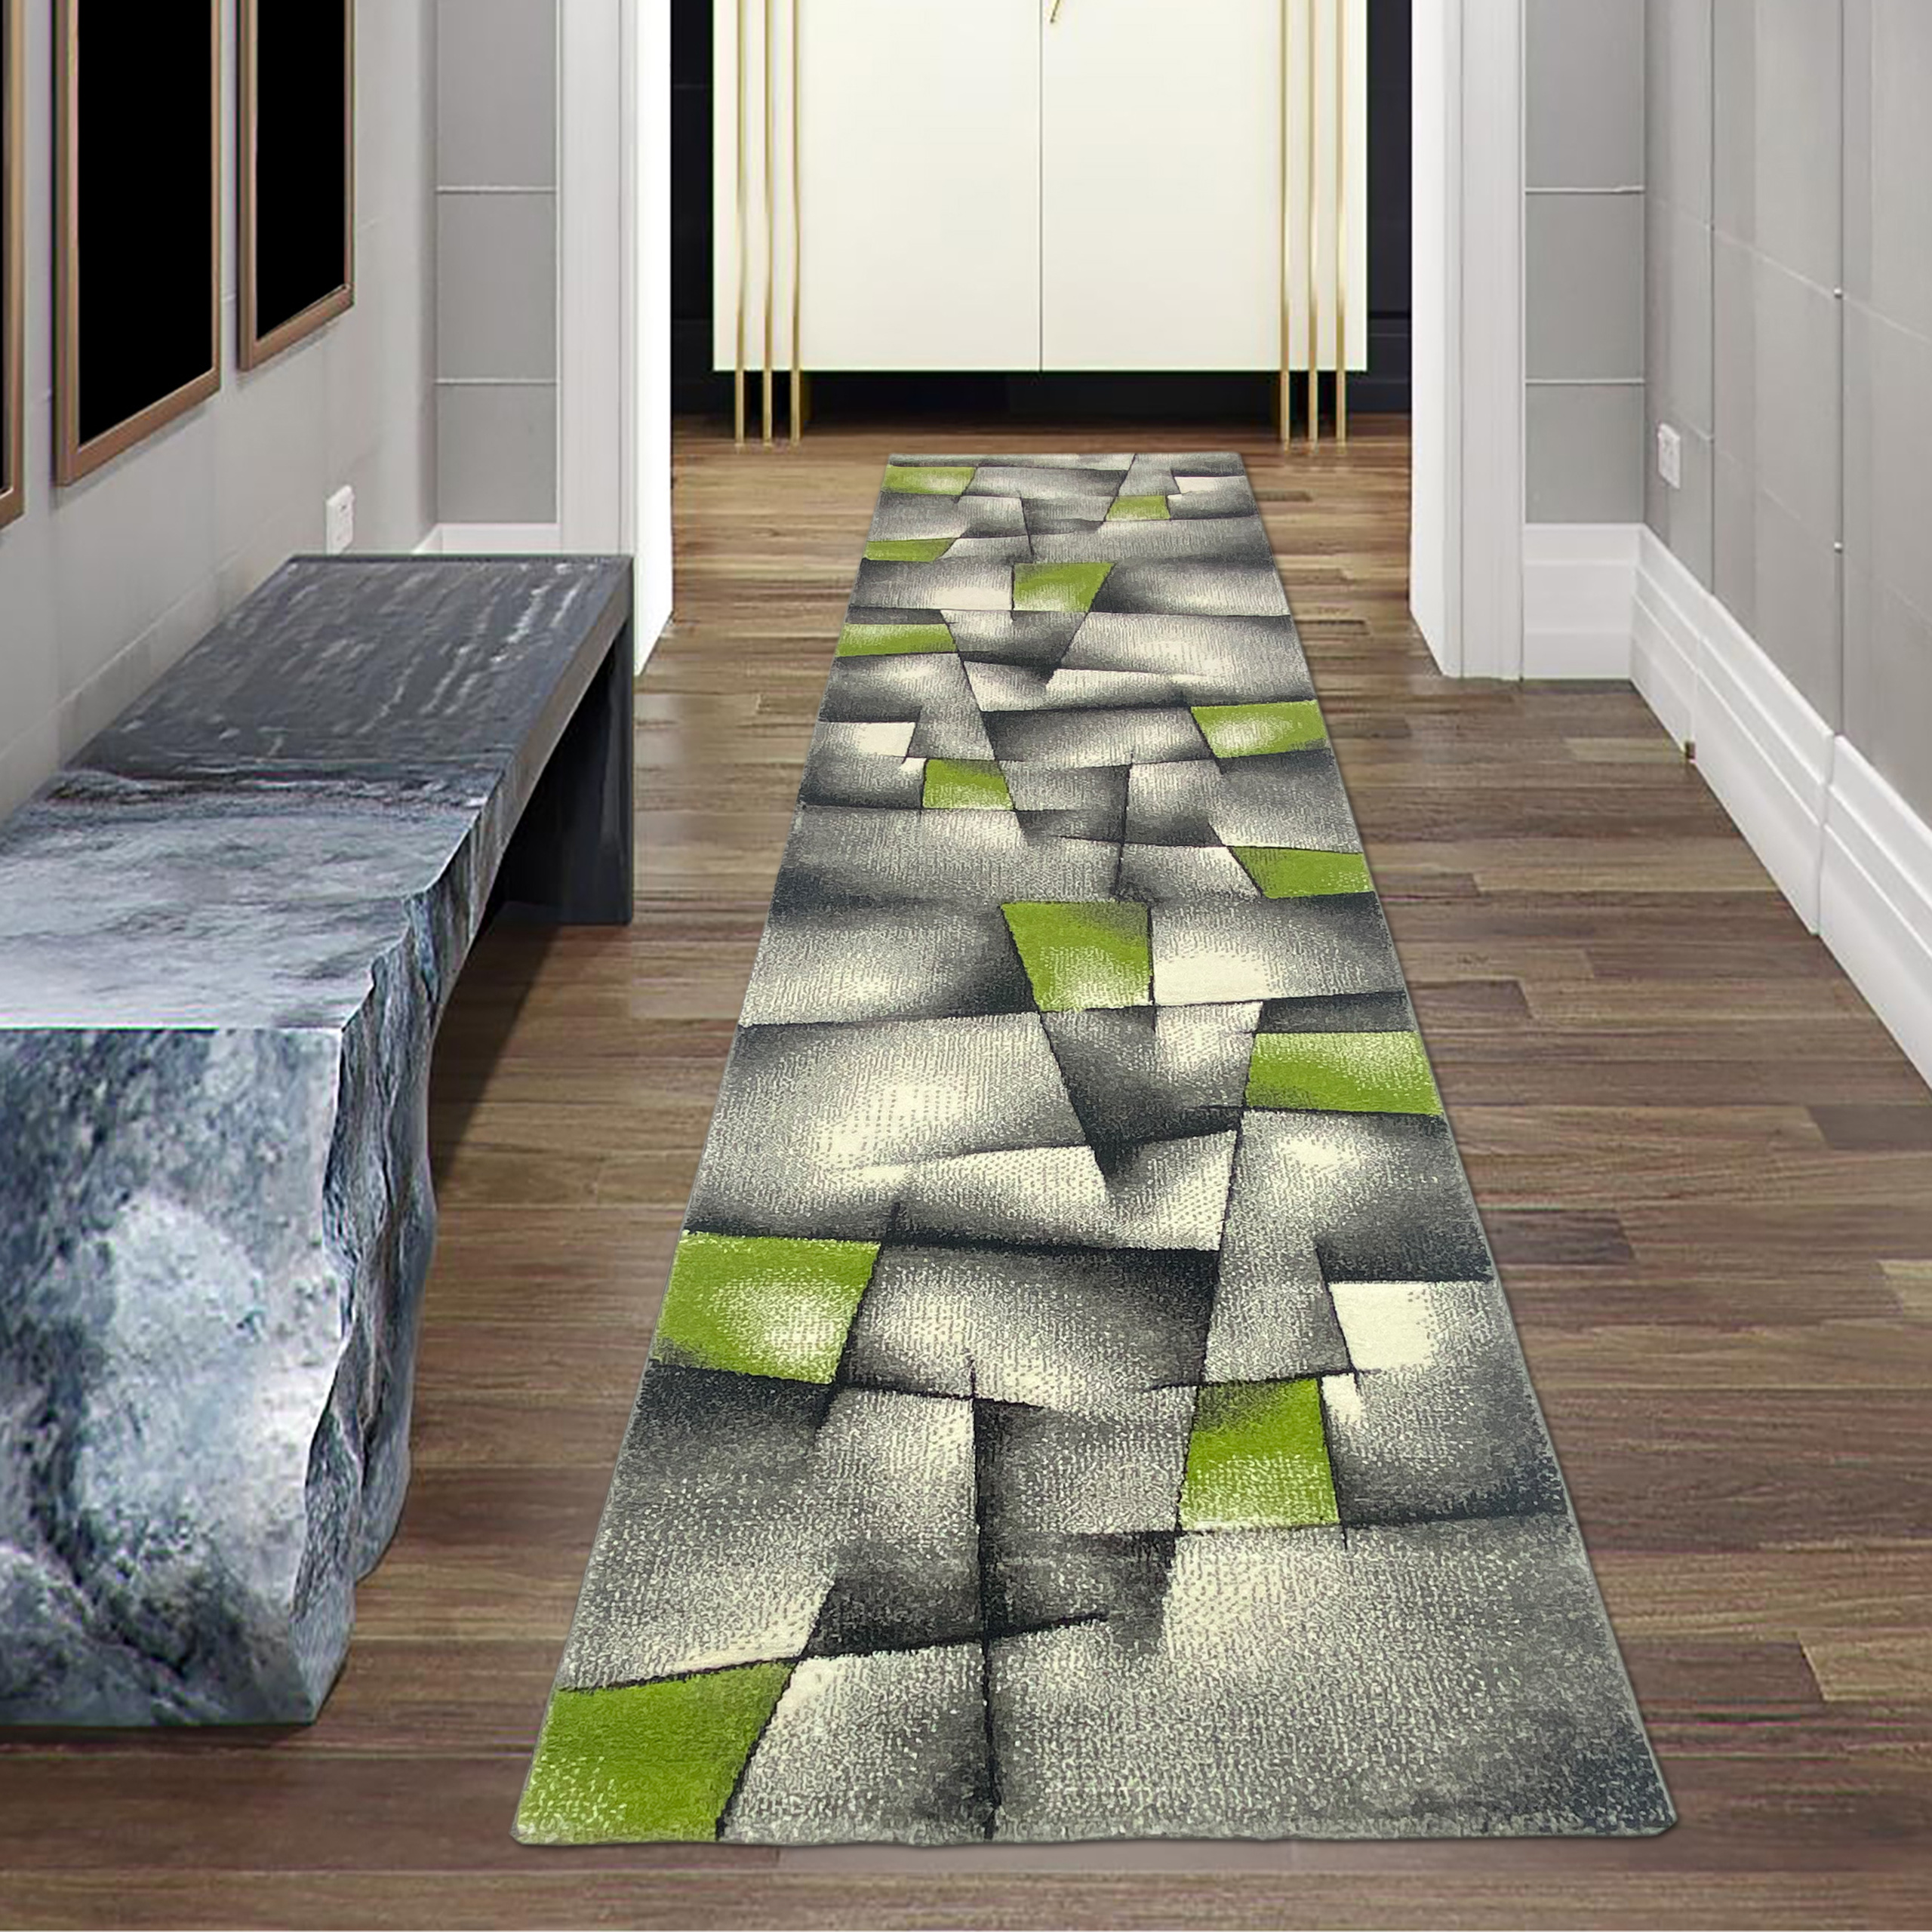  RUGMRZ Teppiche, Dämm- & Schutzmatten 50 x 70 cm Niedriger Samt  Teppich graugrün Minimalist isches Design Moderne Wohnzimmer Dekoration  rutsch fest Teppich Für Esszimmer